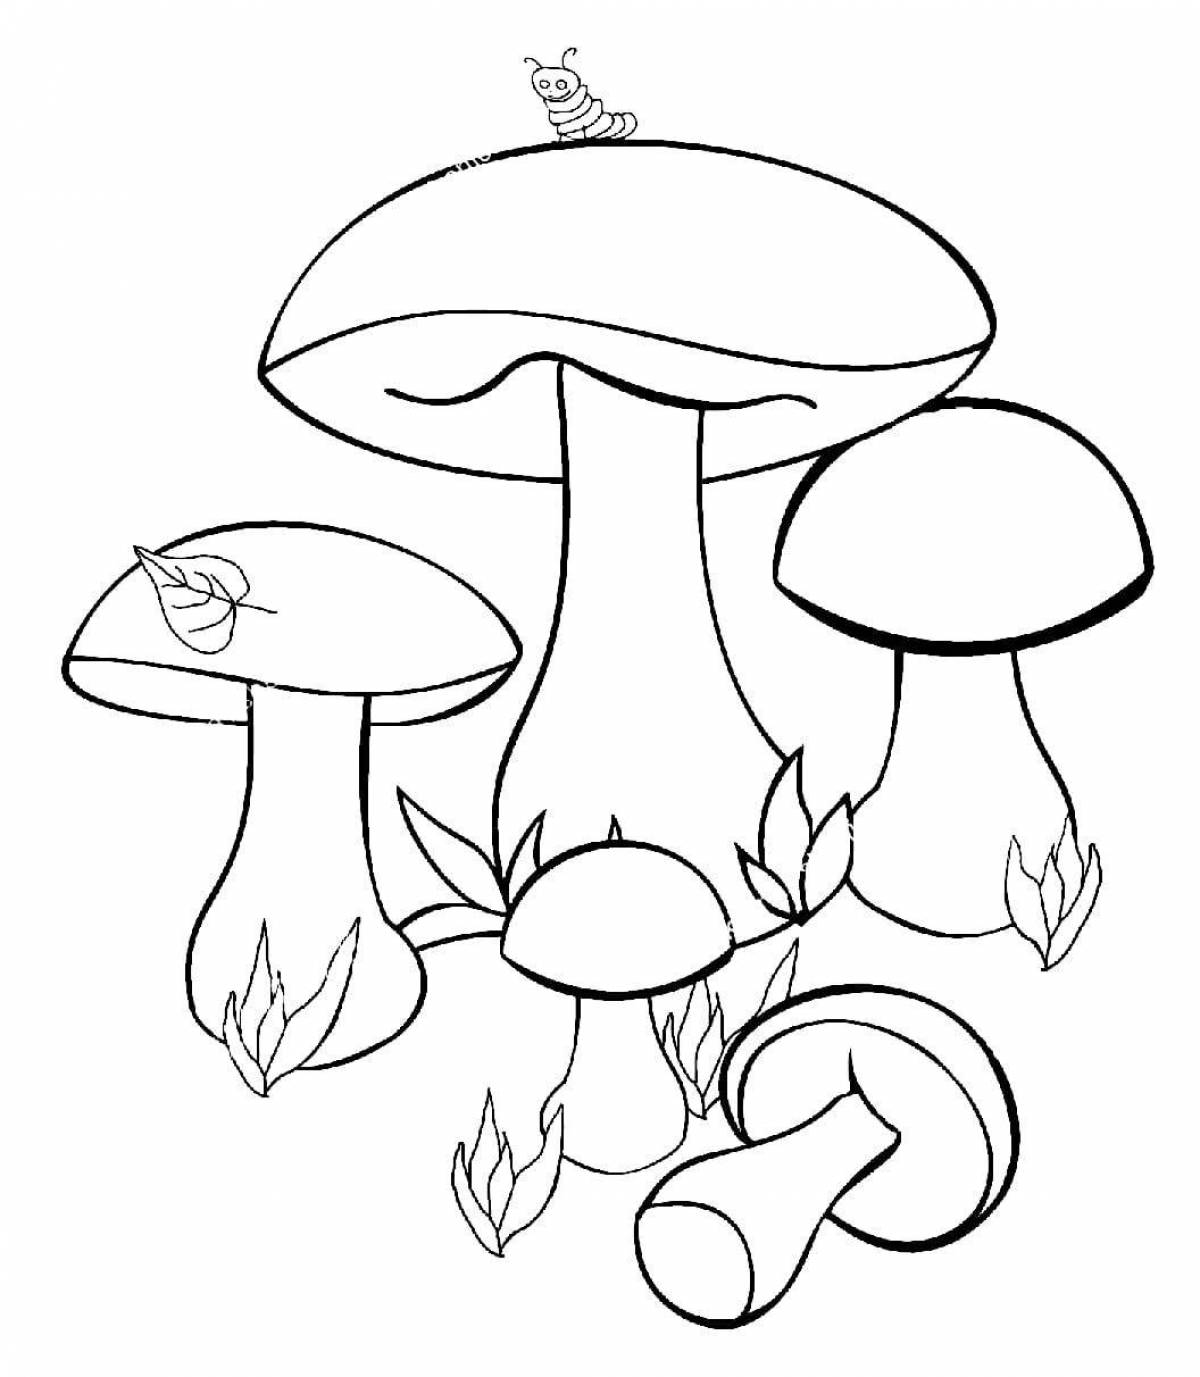 Креативная раскраска грибов для детей 4-5 лет